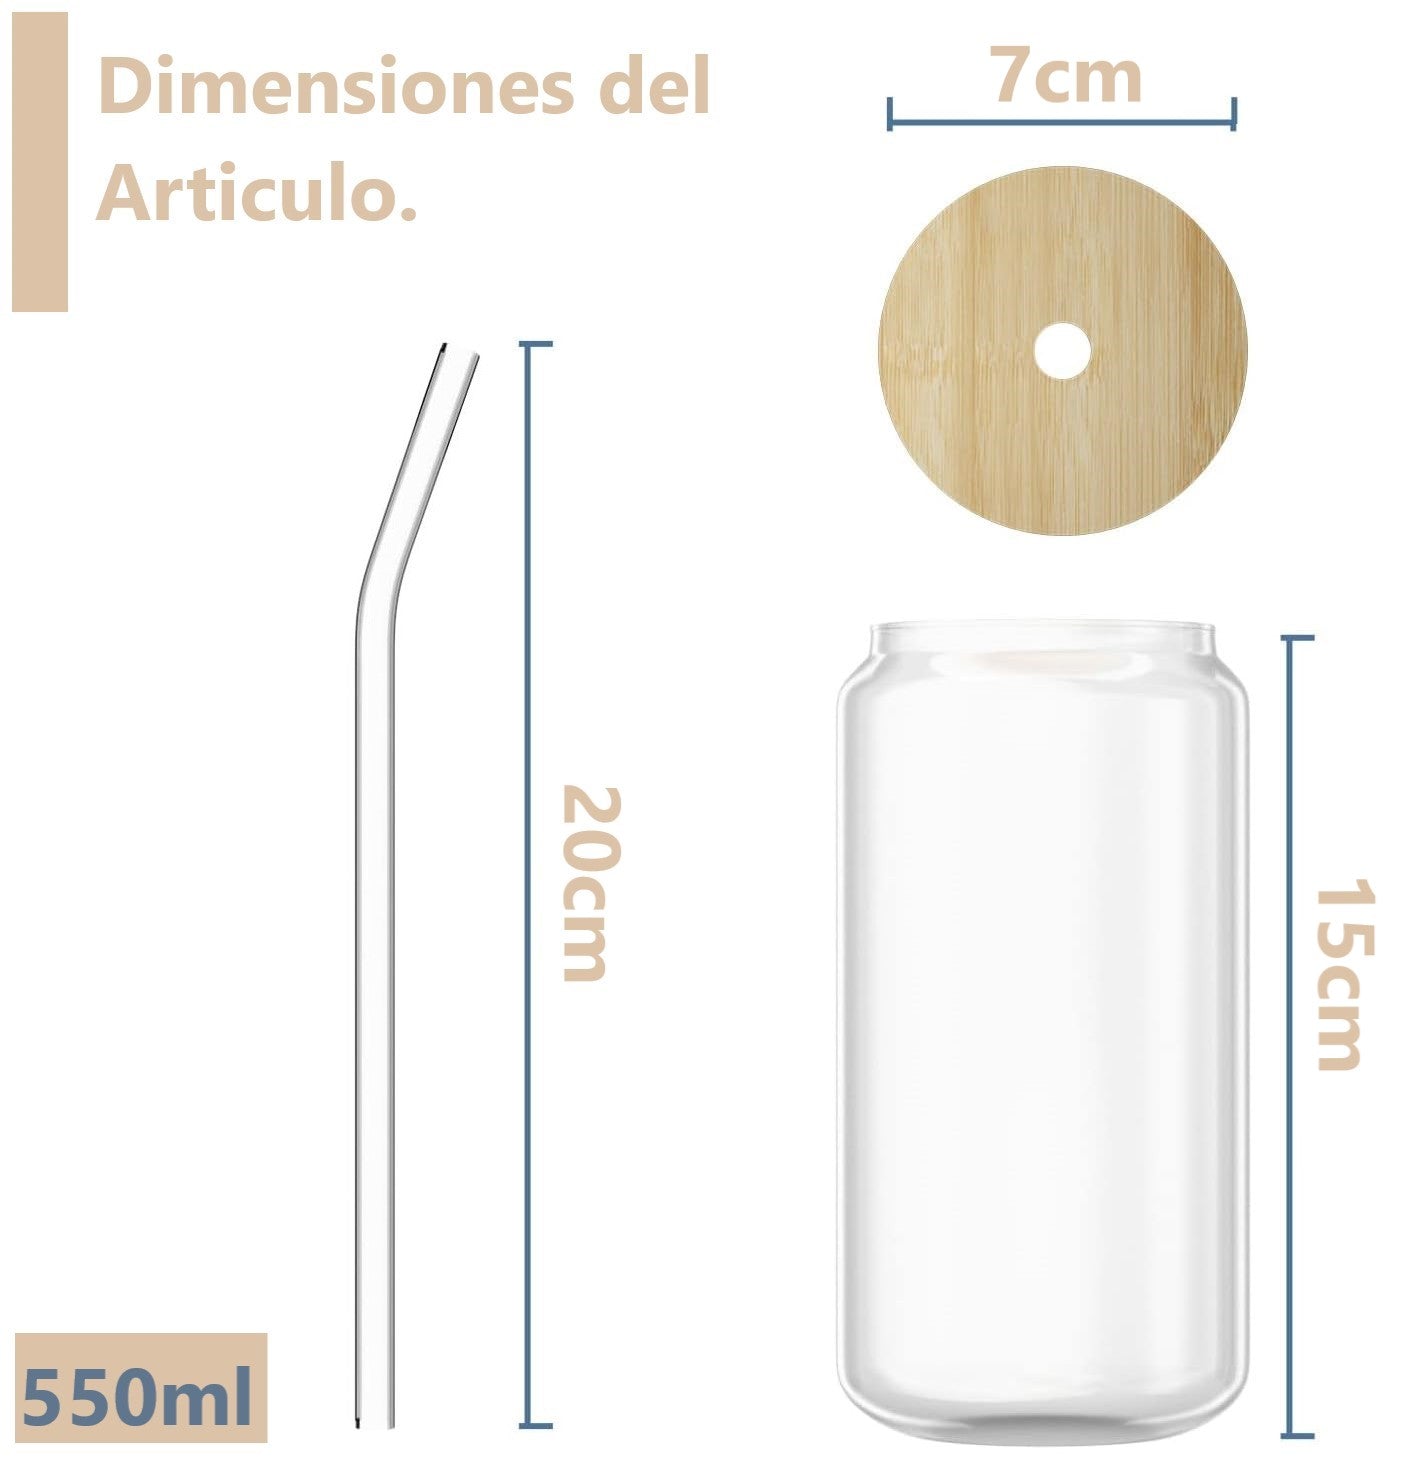 Set de 4 Vasos de Vidrio con Tapa de Bambú y Bombilla 550ml